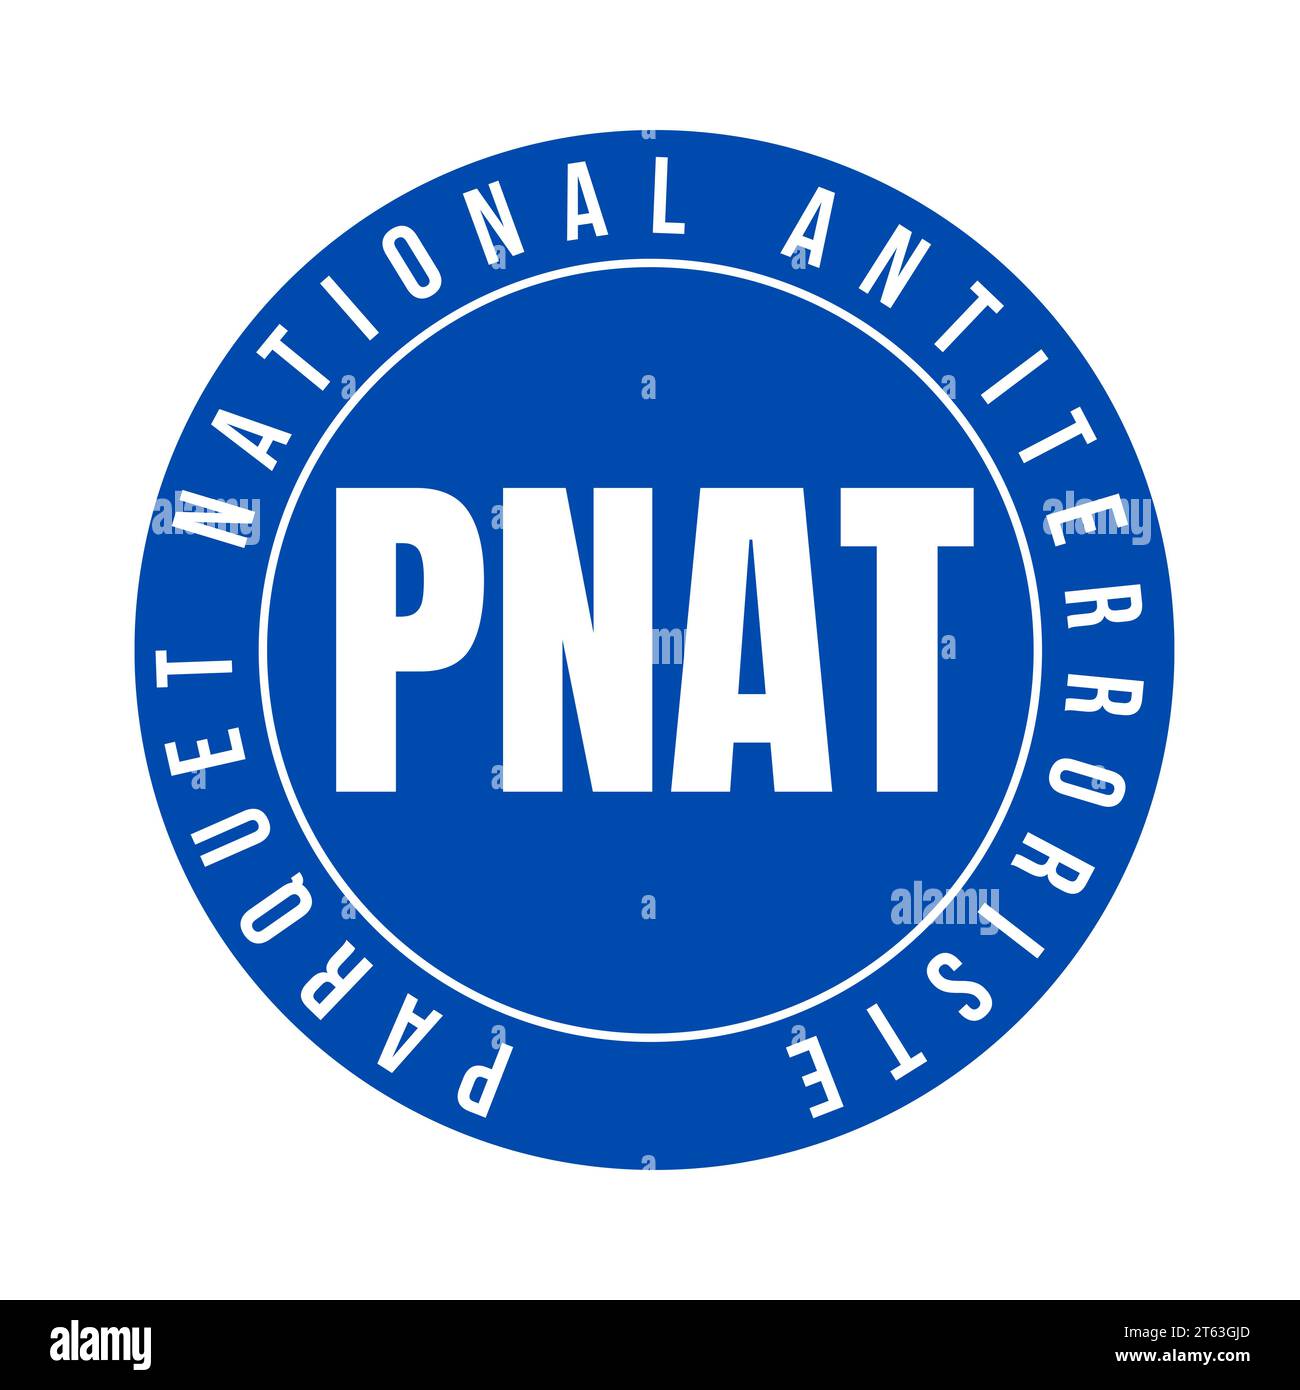 Das Symbol der nationalen Anti-Terror-Strafverfolgung in Frankreich nennt sich PNAT-Parkett nationale Antiterroriste in französischer Sprache Stockfoto